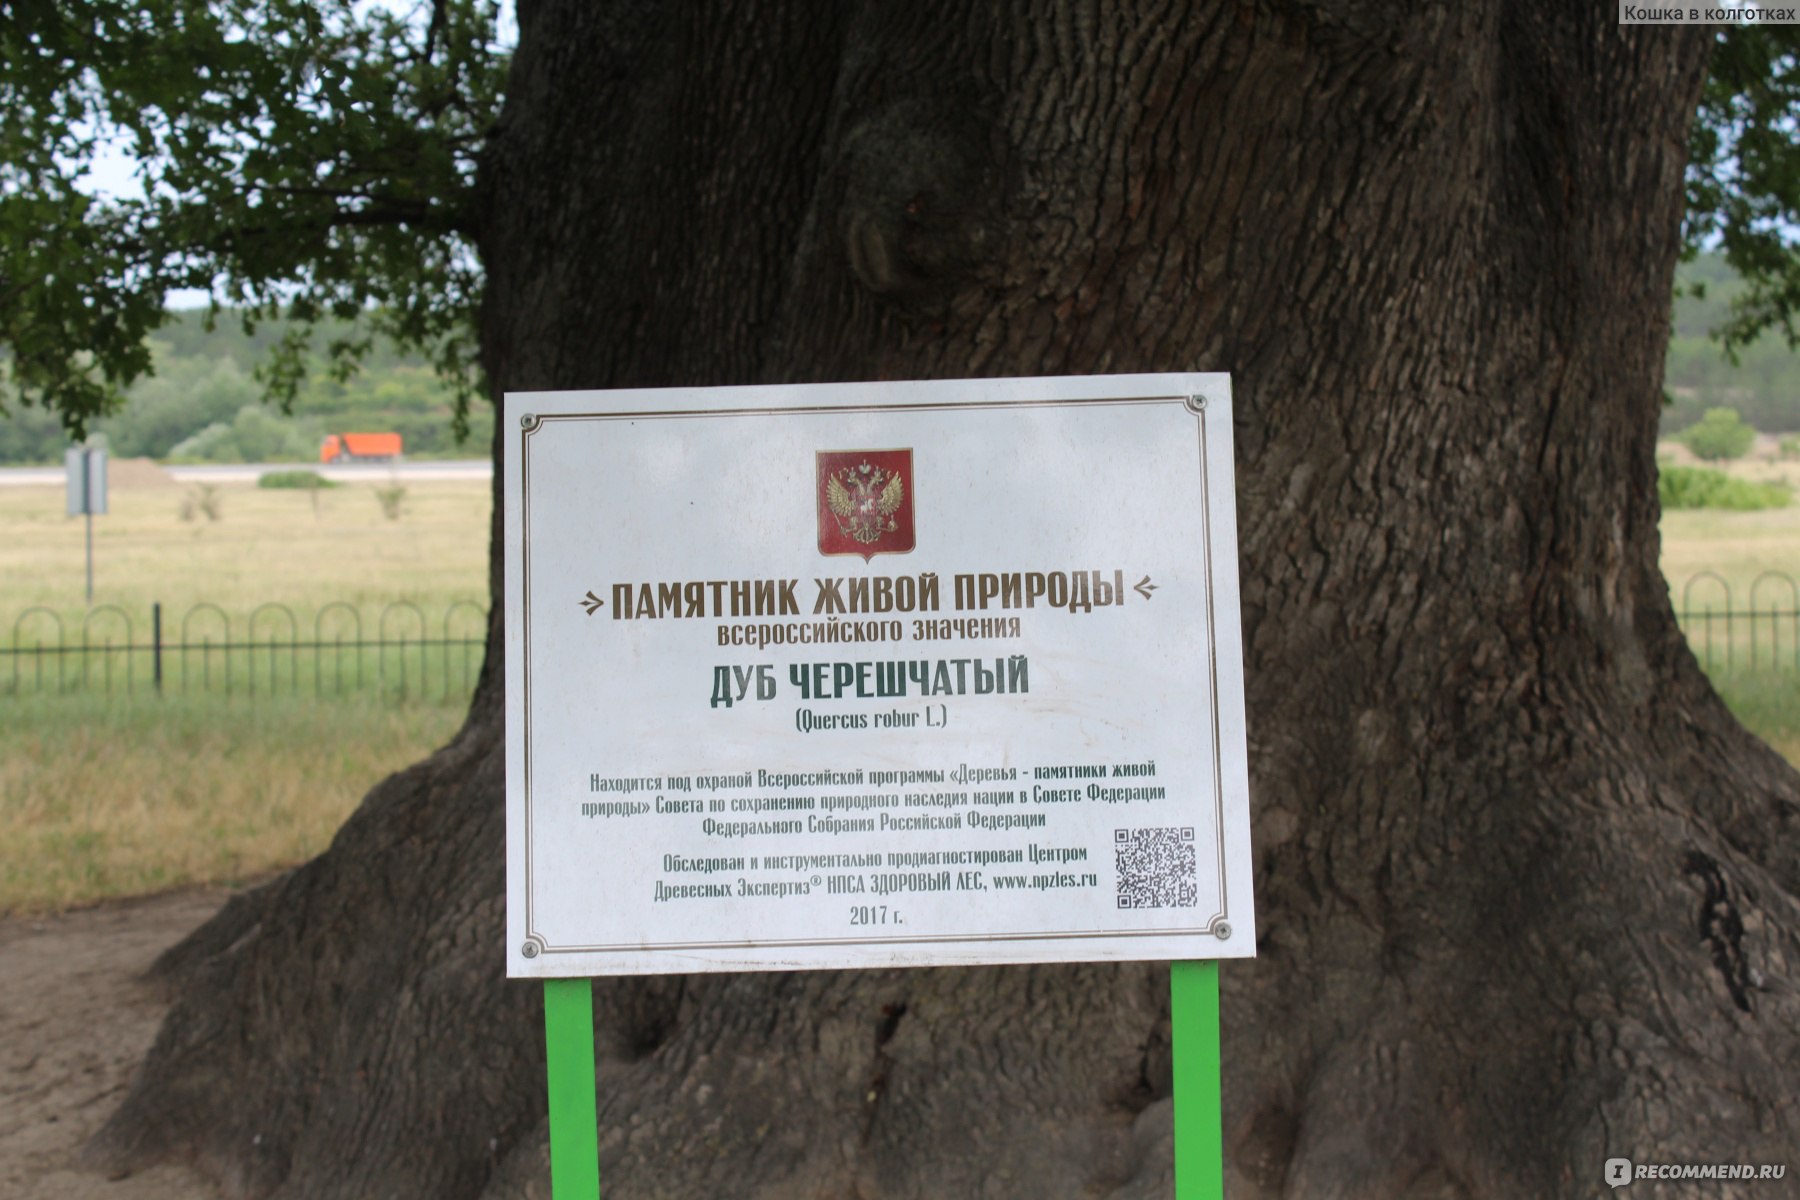 Суворовский дуб в Крыму